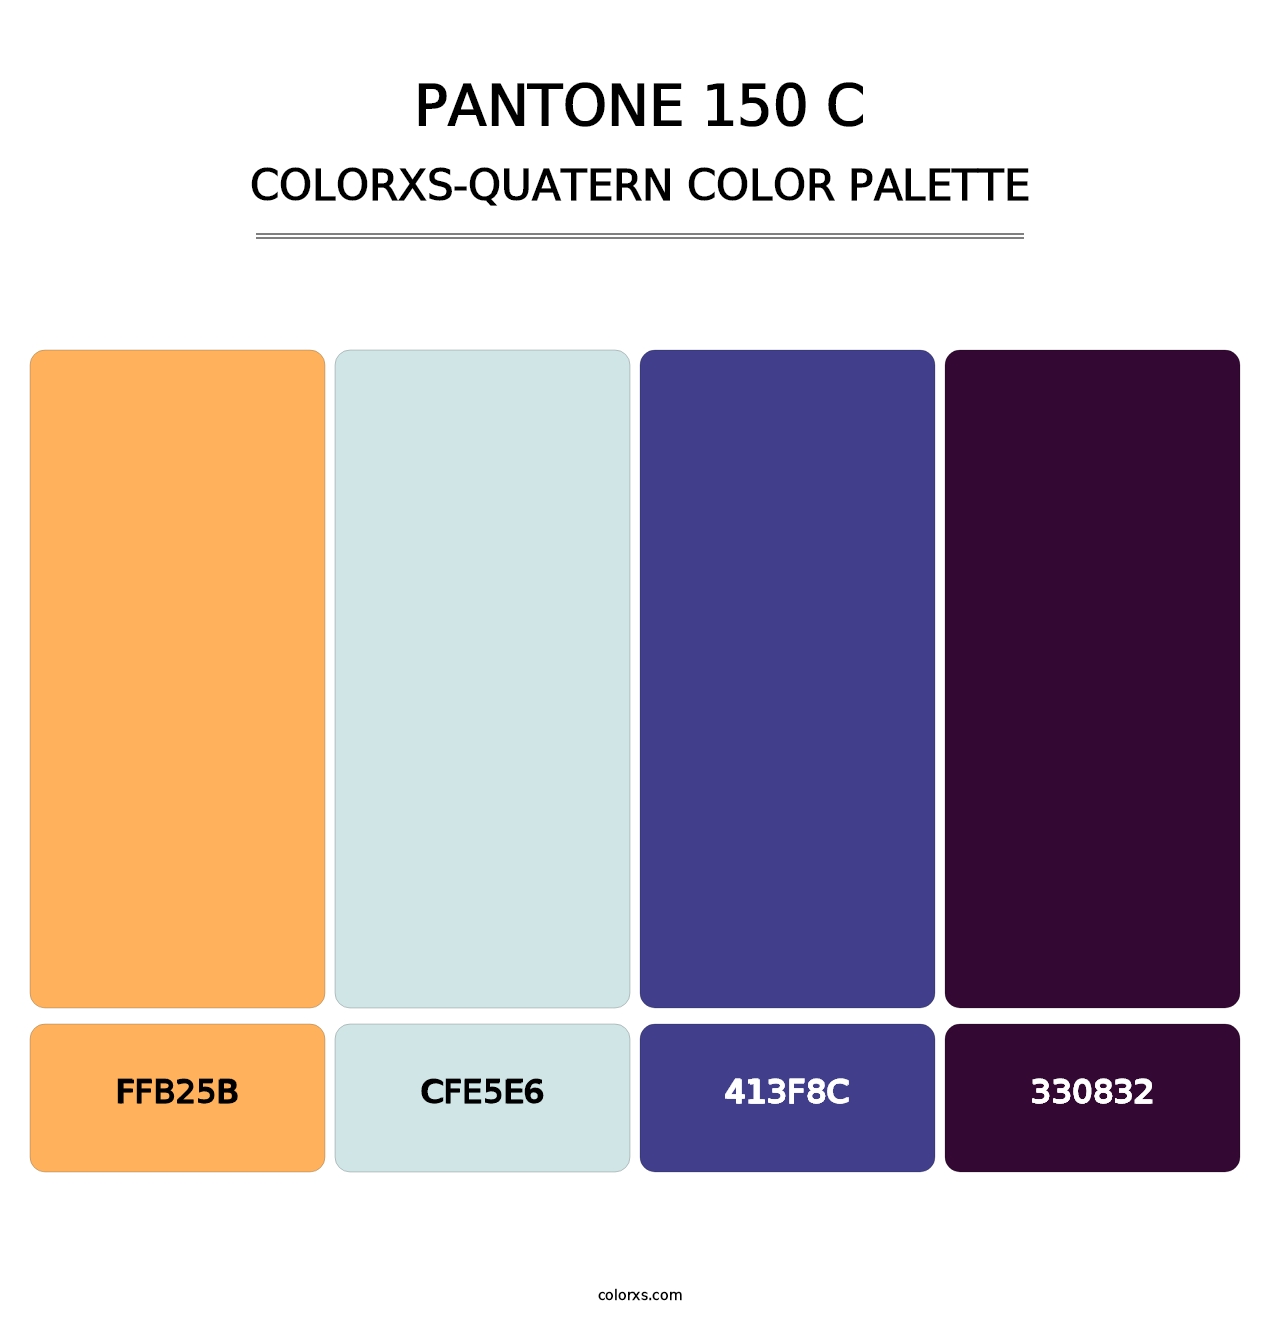 PANTONE 150 C - Colorxs Quatern Palette